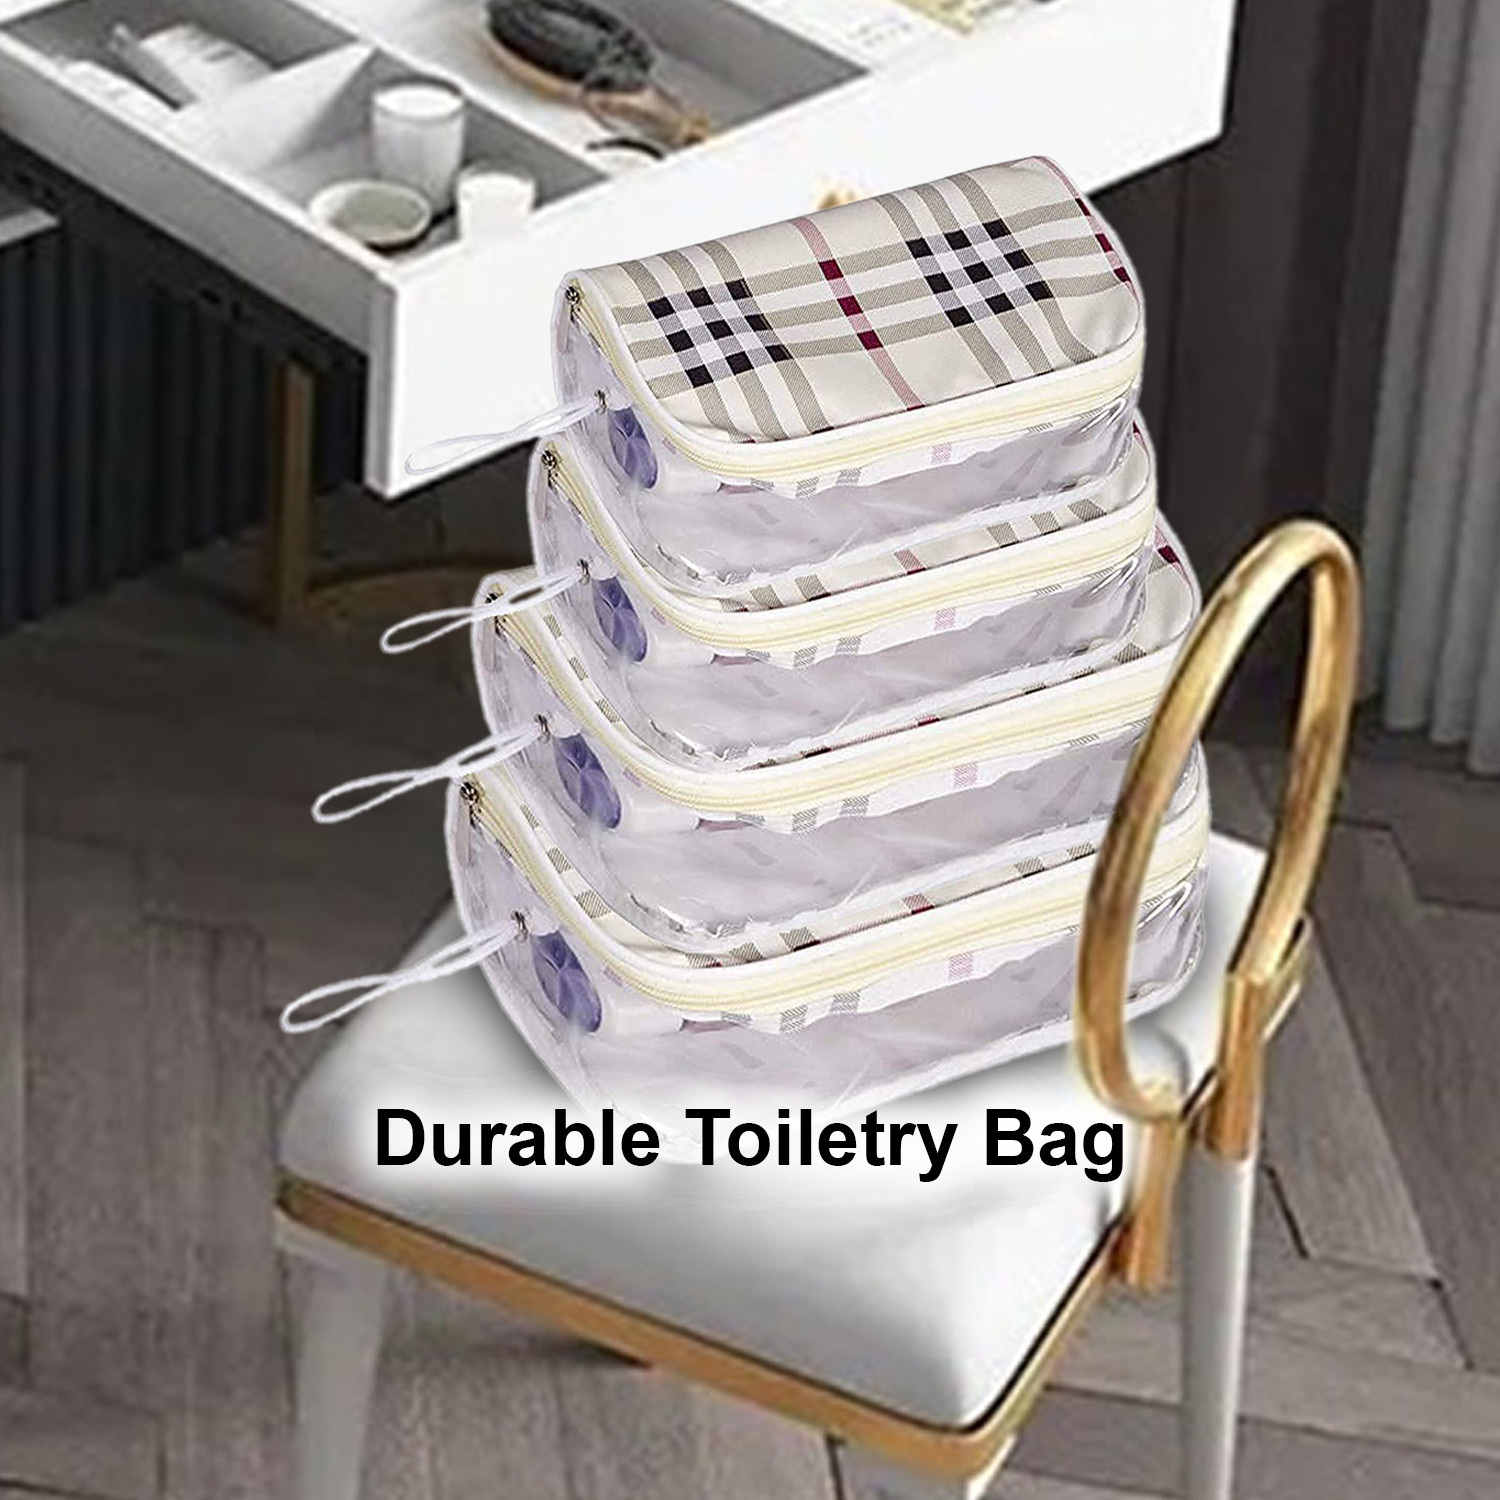 Kuber Industries Multiuses Rexine Check Print Travel Toiletry Bag/Dopp Kit For Traveling Set of 4 (White)